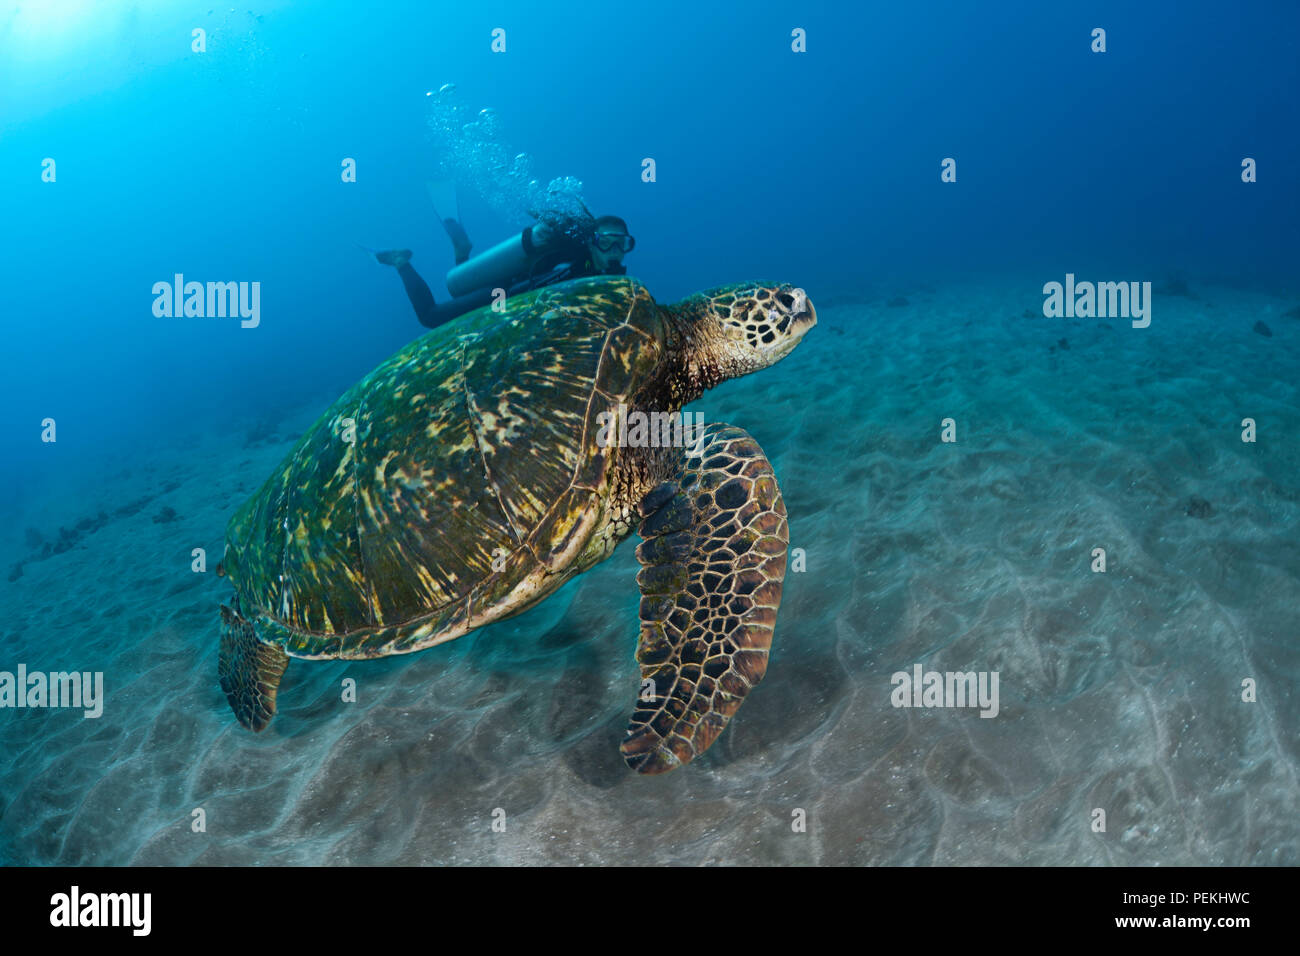 Una specie in via di estinzione, tartarughe marine verdi, Chelonia Mydas, sono una visione comune attorno alle Hawaii. Il subacqueo è il modello rilasciato. Foto Stock